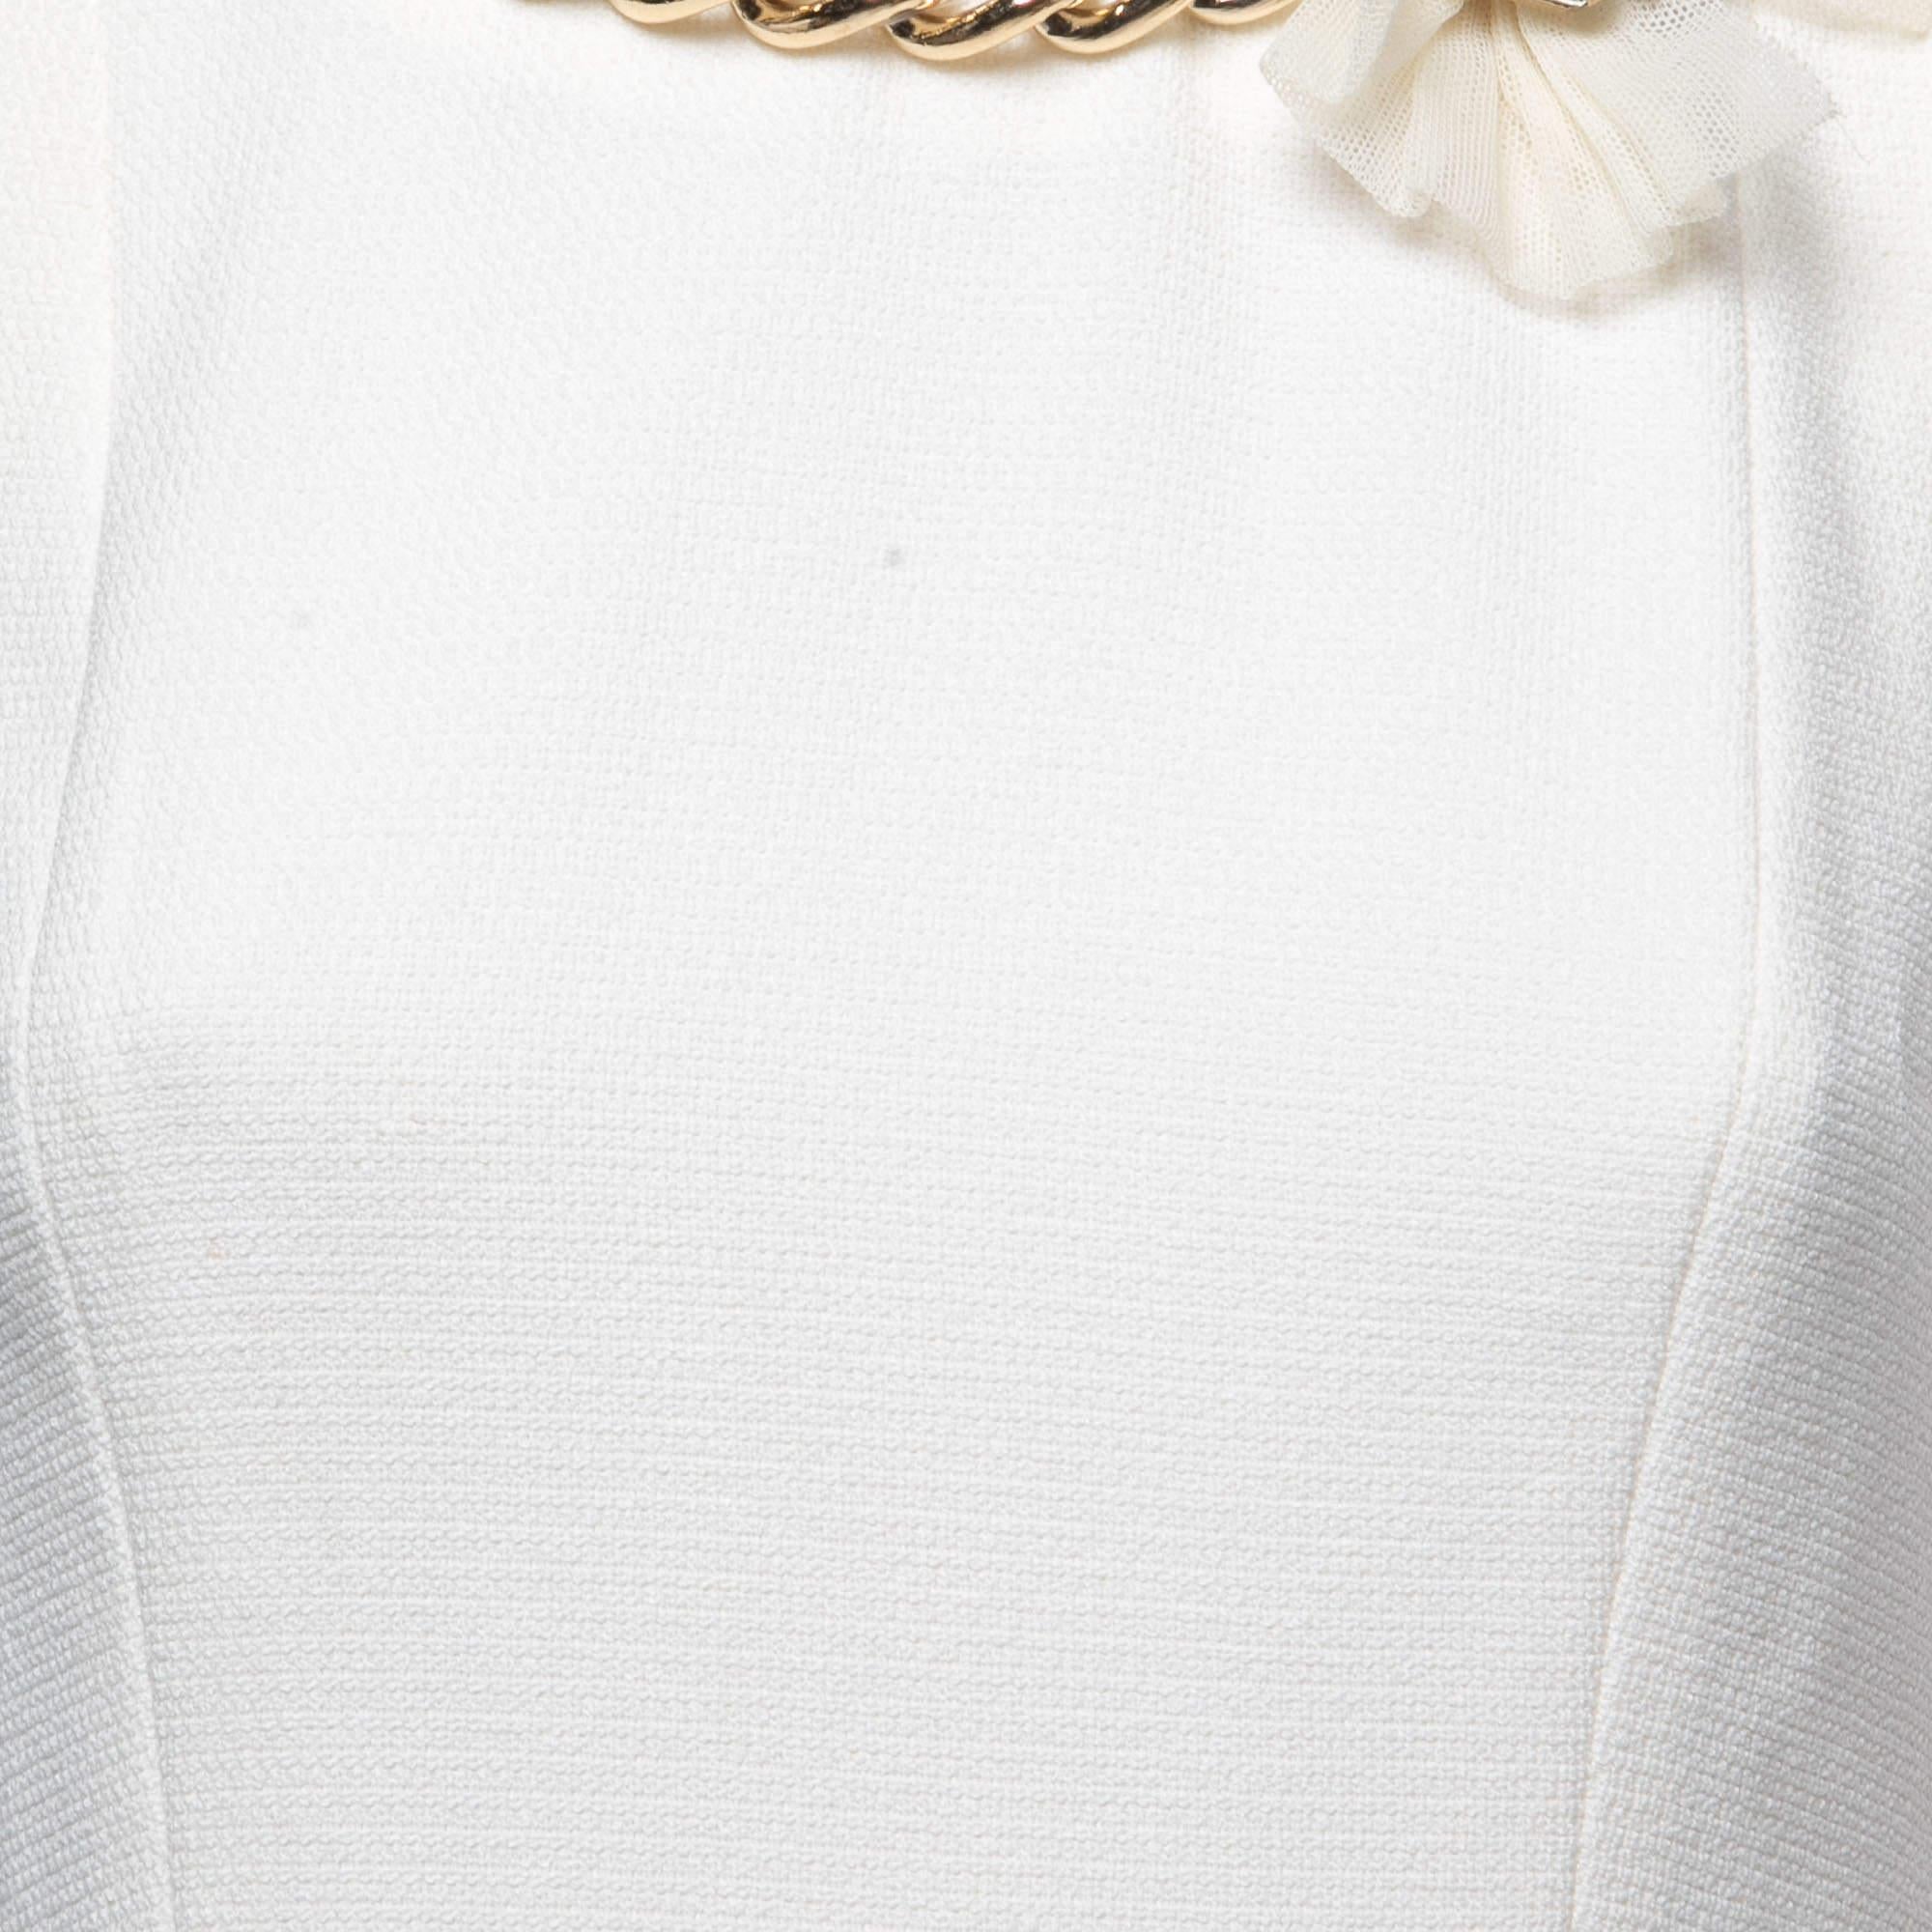 Elisabetta Franchi White Floral Lace Chain Detail Mini Dress XL For Sale 1